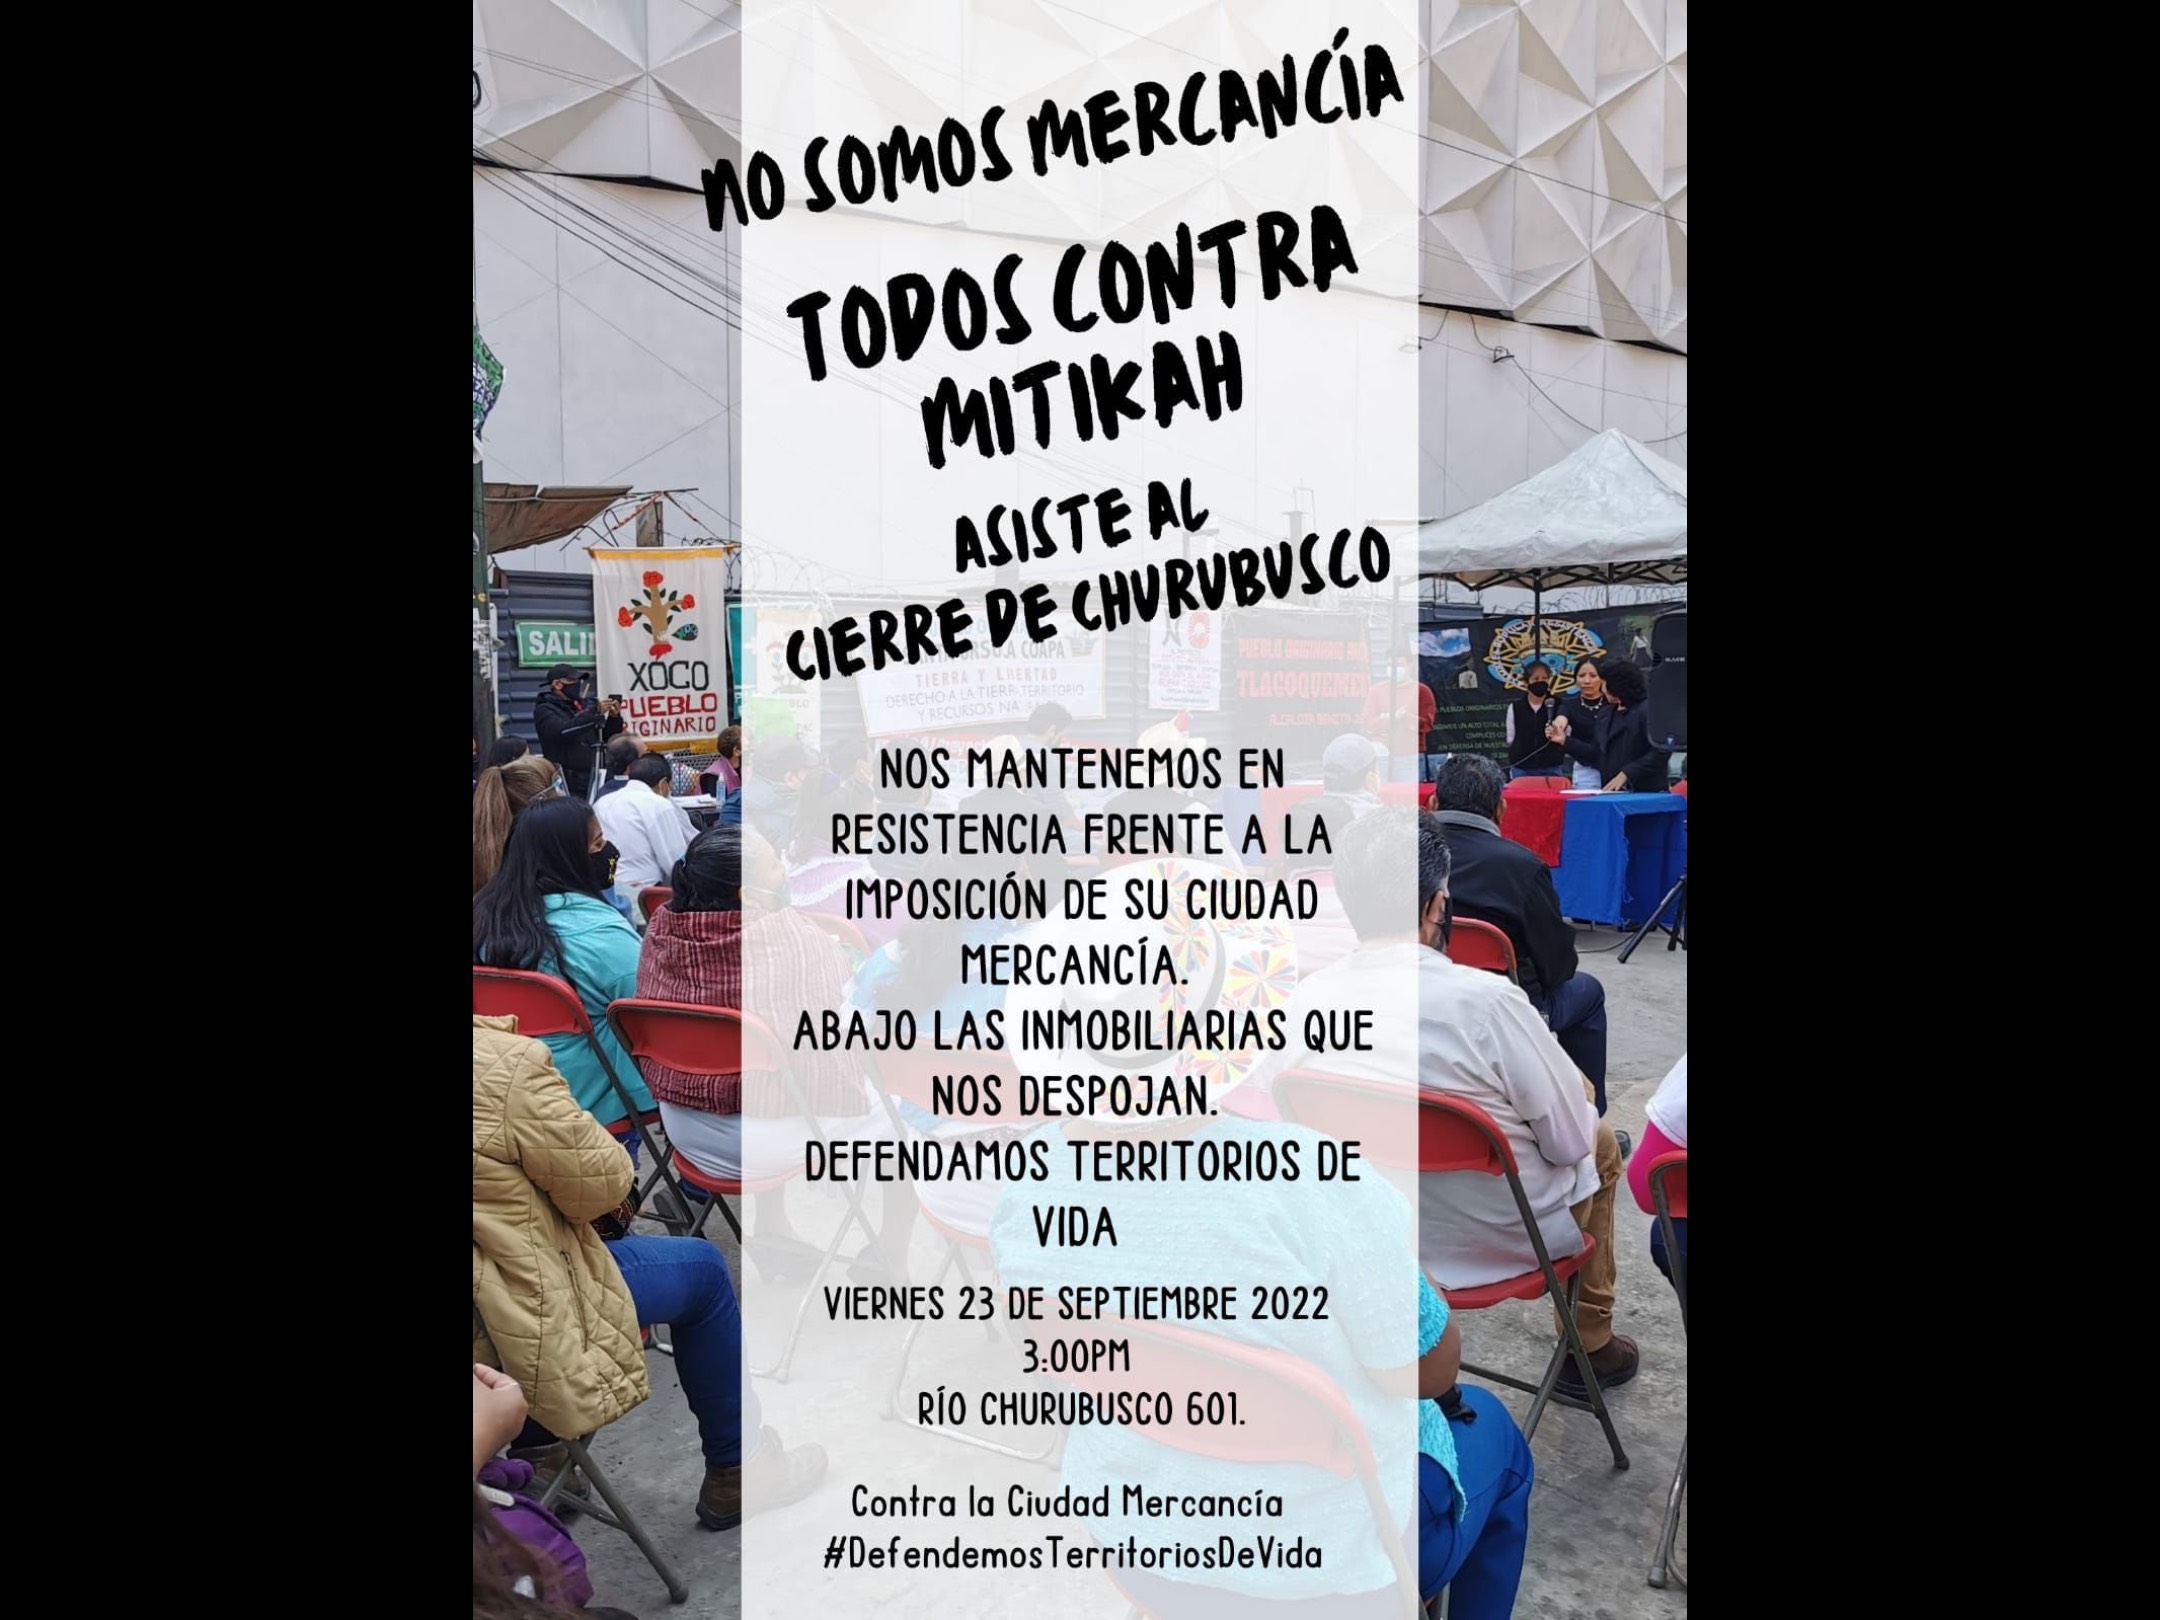 Vecinos del pueblo de Xoco anunciaron que bloquearán Río Churubusco para protestar por la apertura del centro comercial del proyecto Mitikah (Foto: Twitter/@PueblosdeXoco)